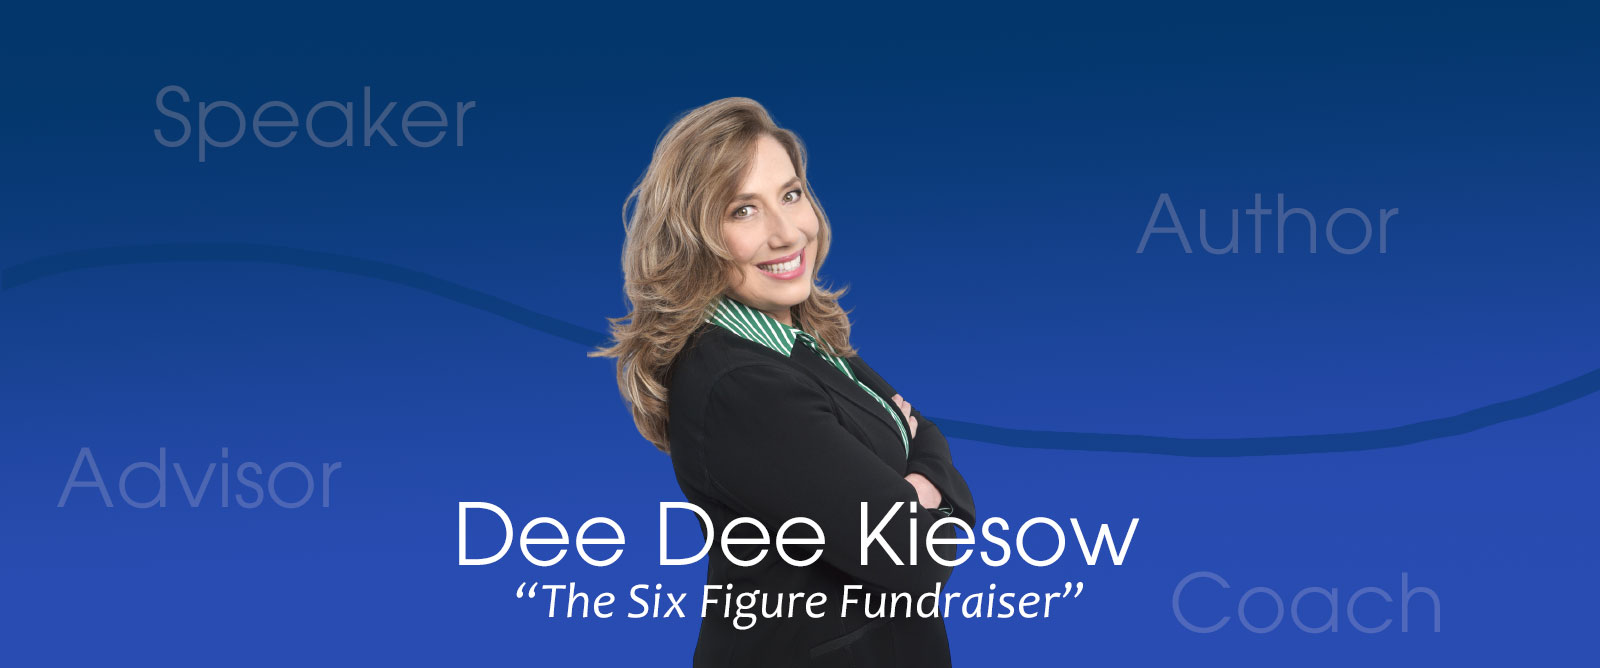 DeeDee Kiesow - The Six Figure Fundraiser